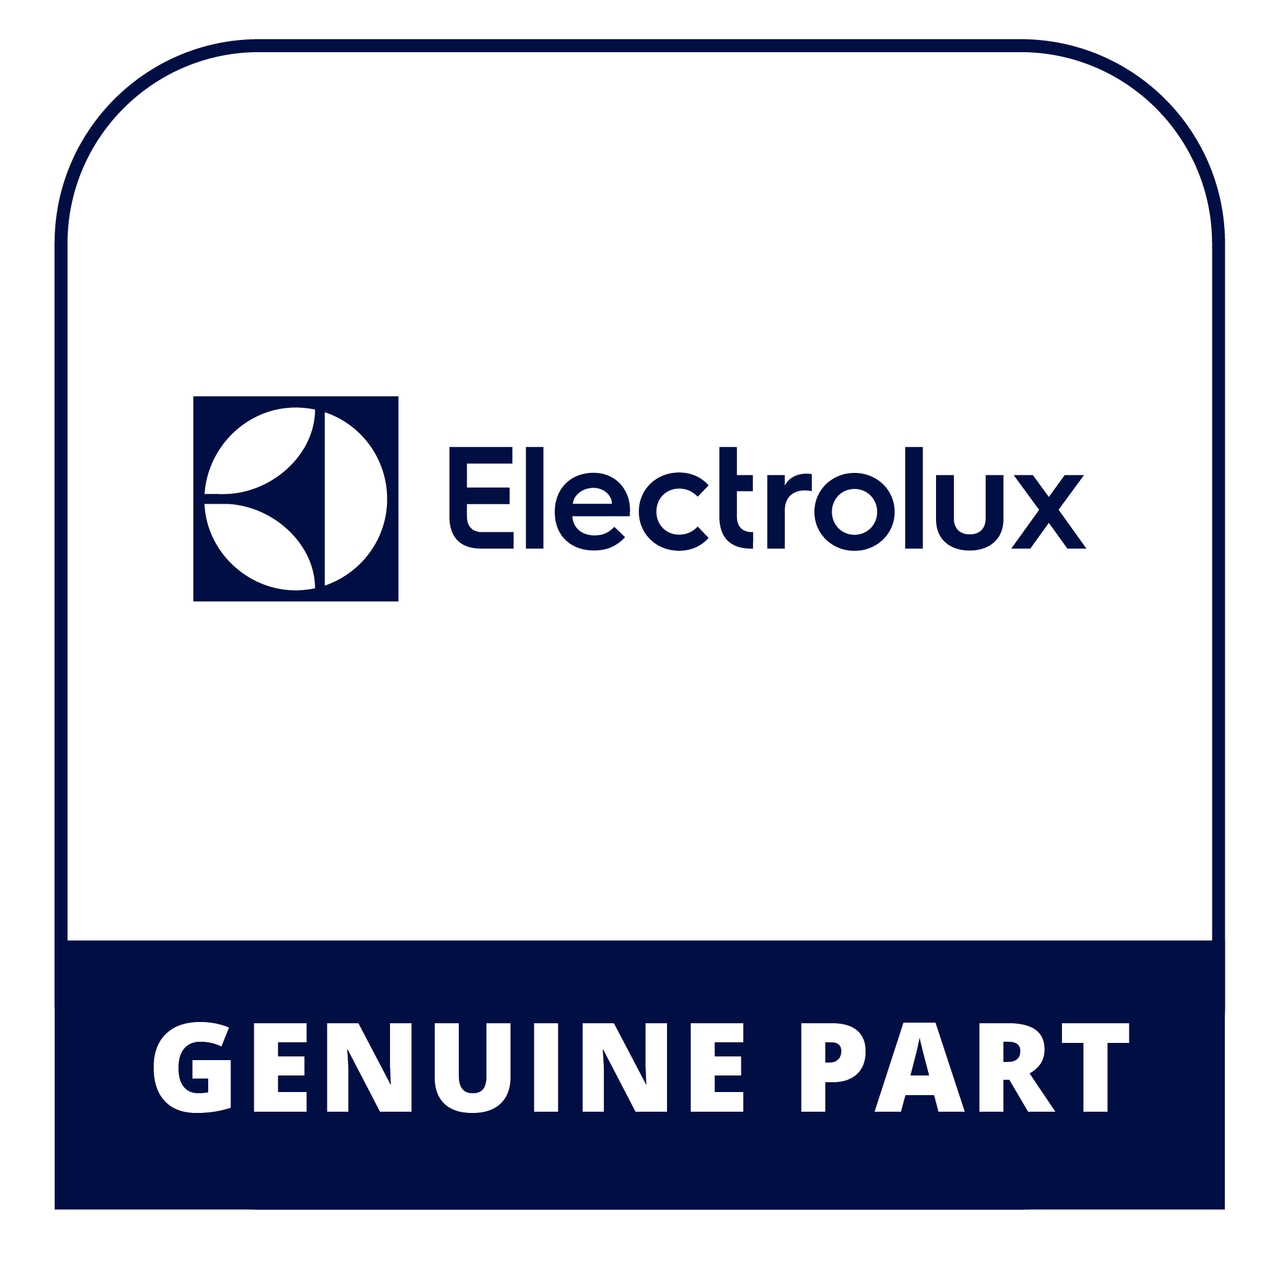 Frigidaire - Electrolux 316083100 Switch - Genuine Electrolux Part